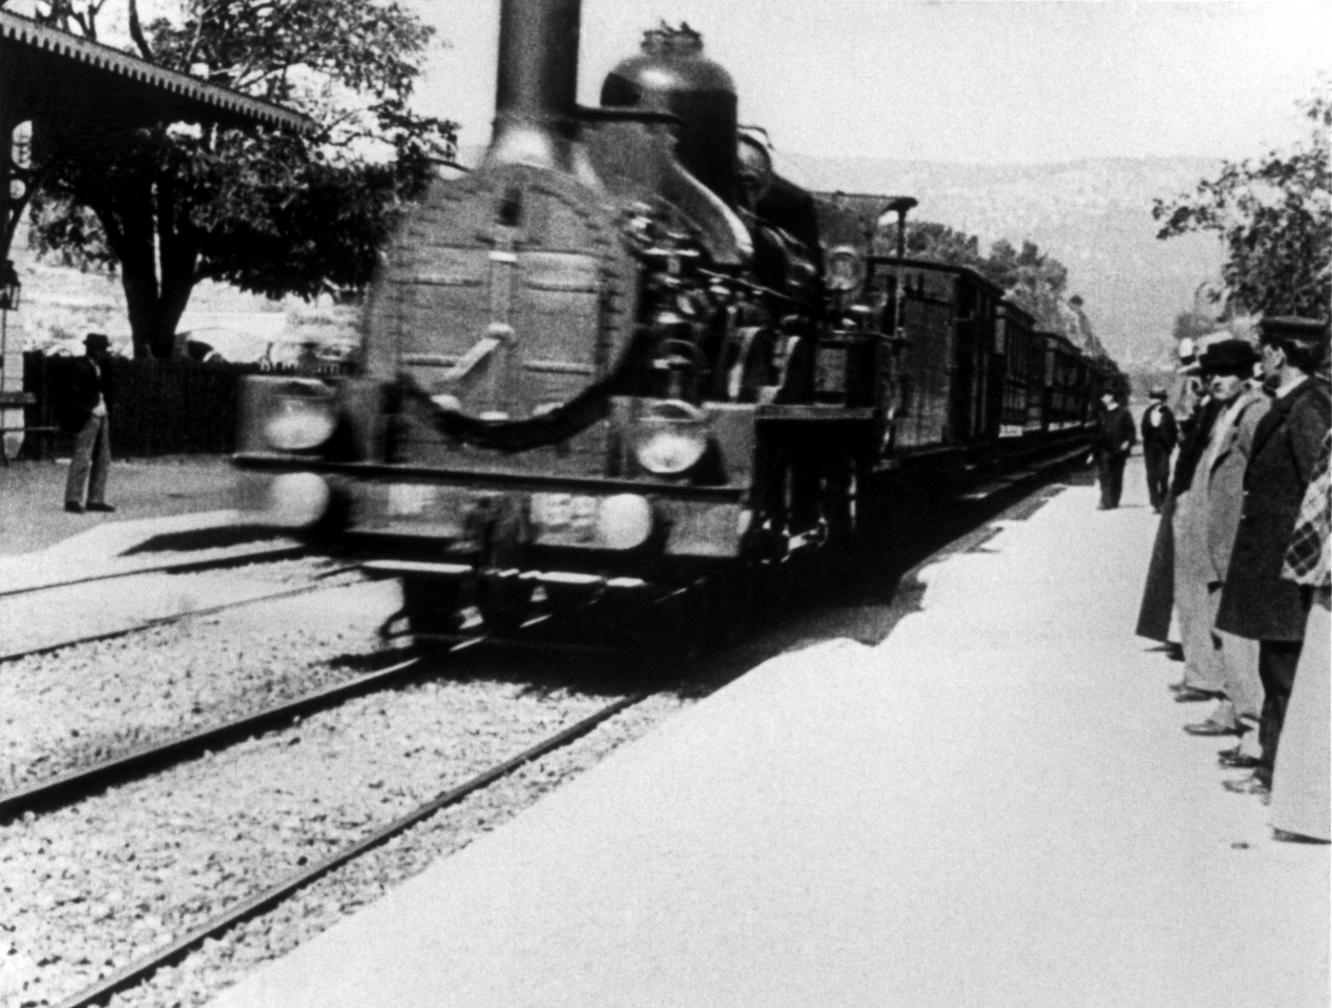 TRAINS: Arrivée d'un train en gare à La Ciotat (1895)